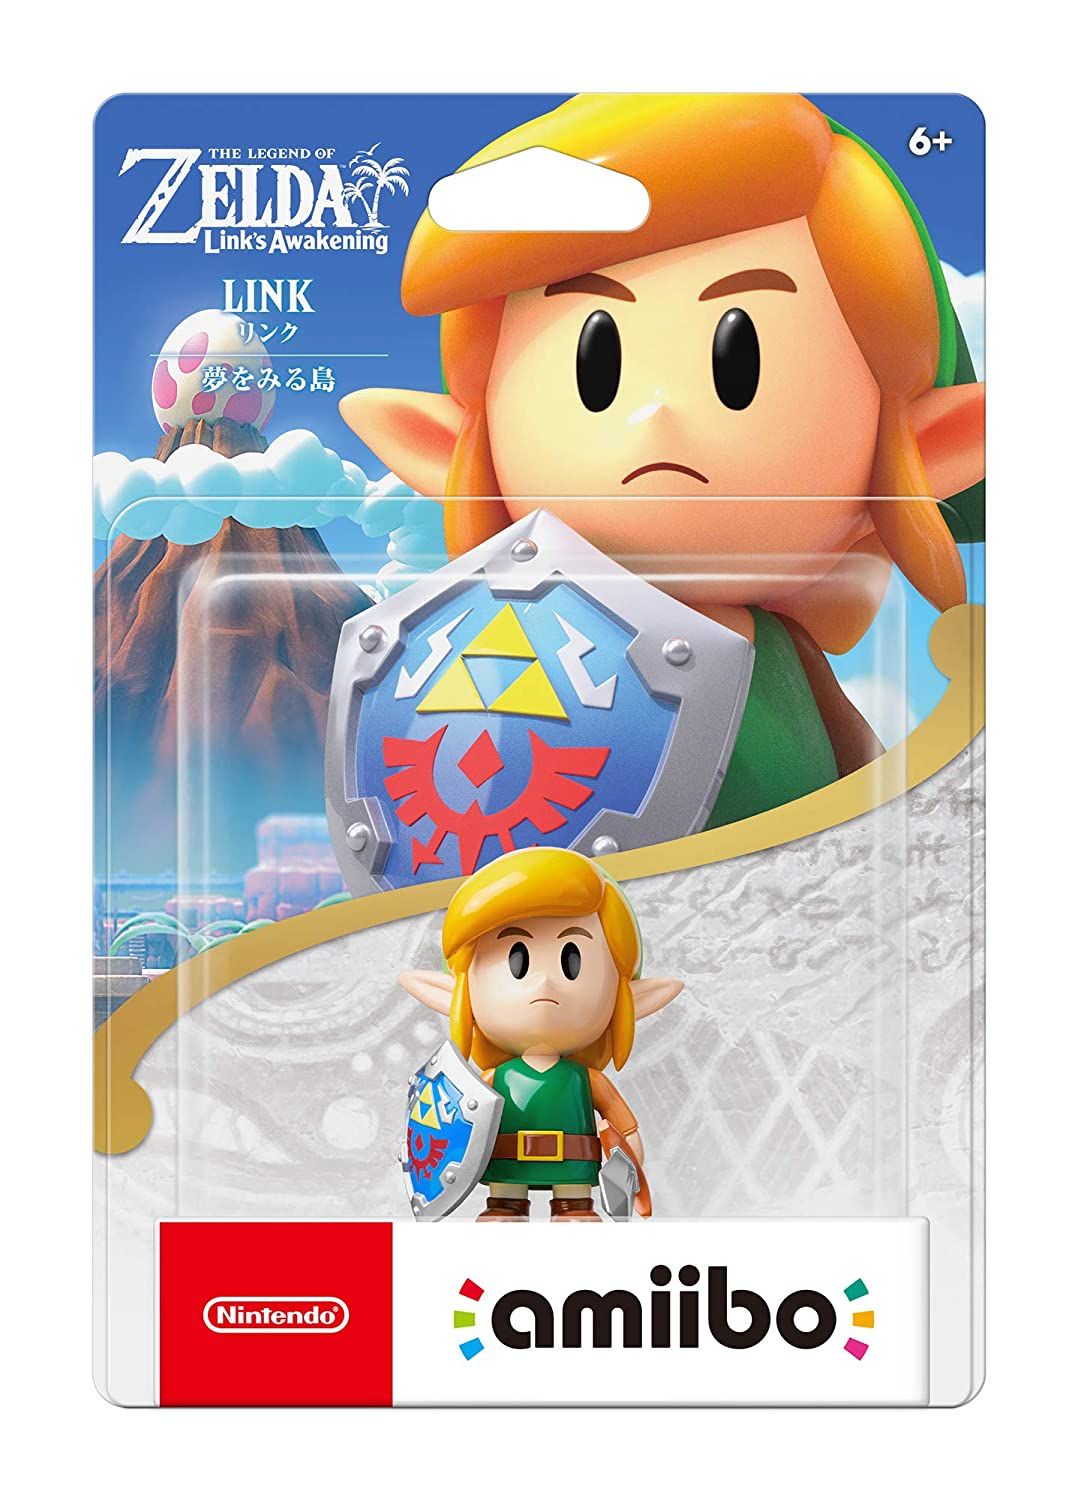 Nintendo Amiibo - Link The Legend of Zelda Link's Awakening Series 3